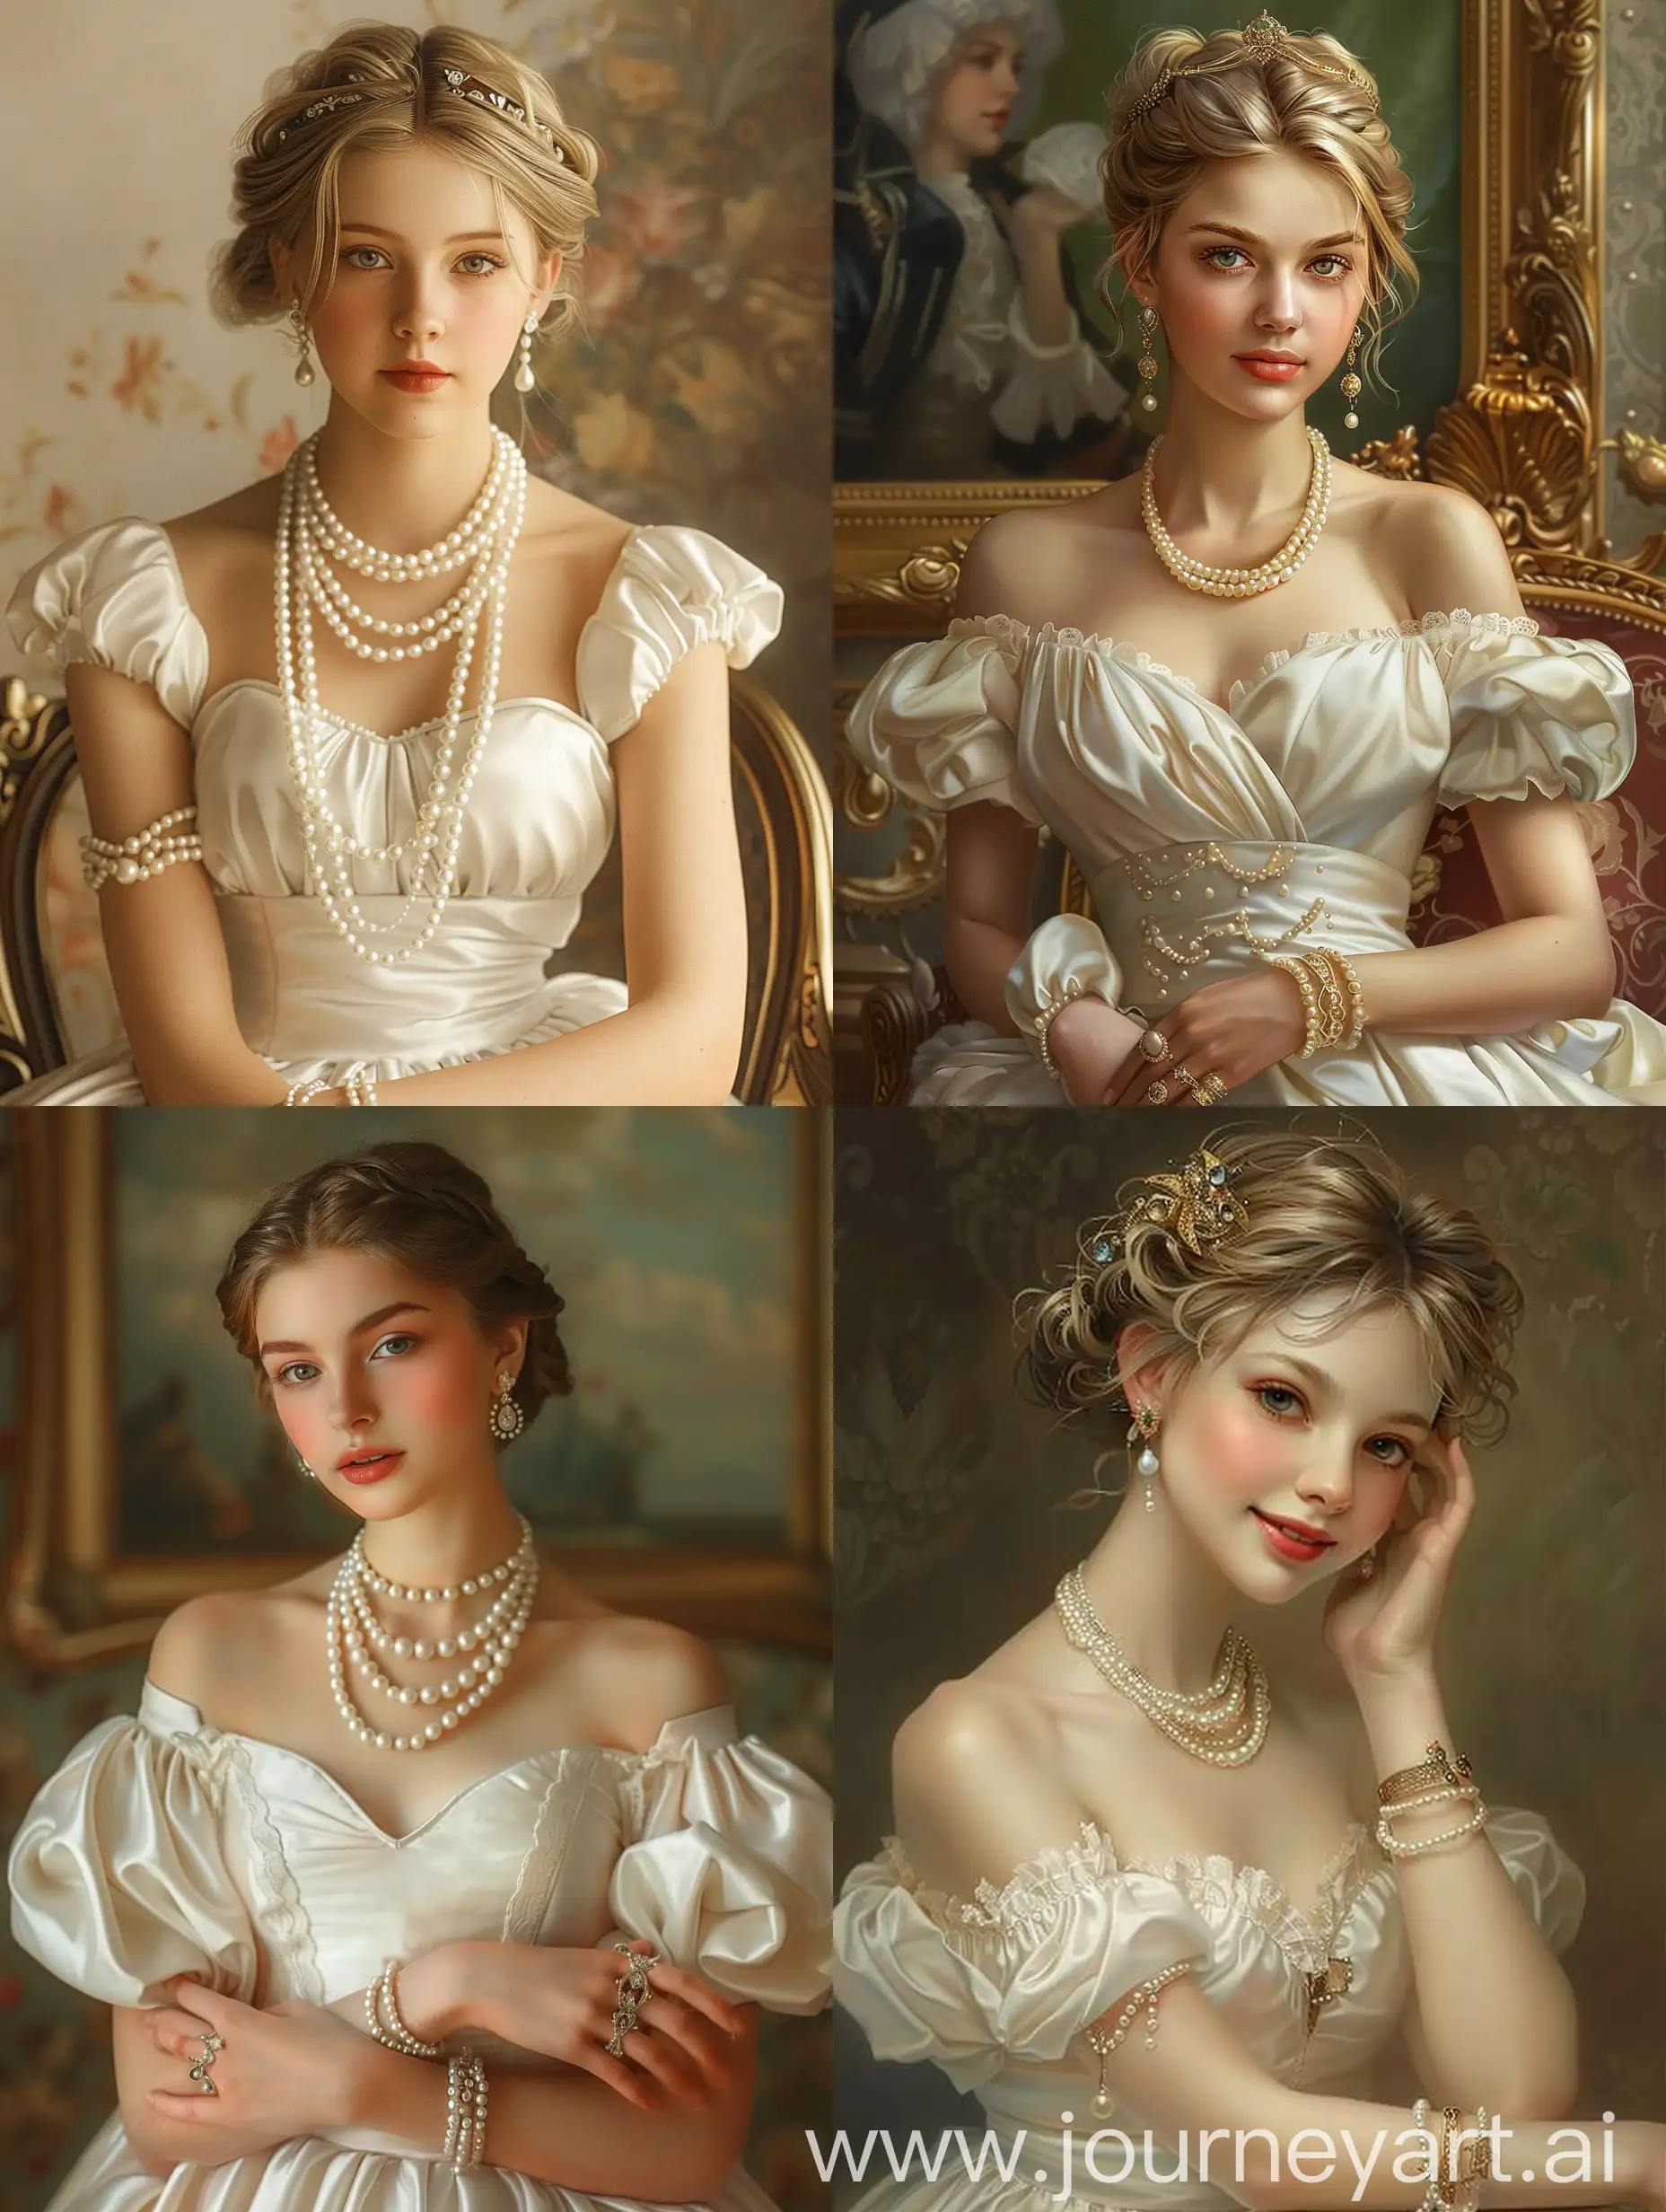 穿着轻薄的白色丝绸连衣裙，戴着珍珠项链，耳环，手链的欧洲贵族少女，白皙的皮肤，美丽的面容，油画风格